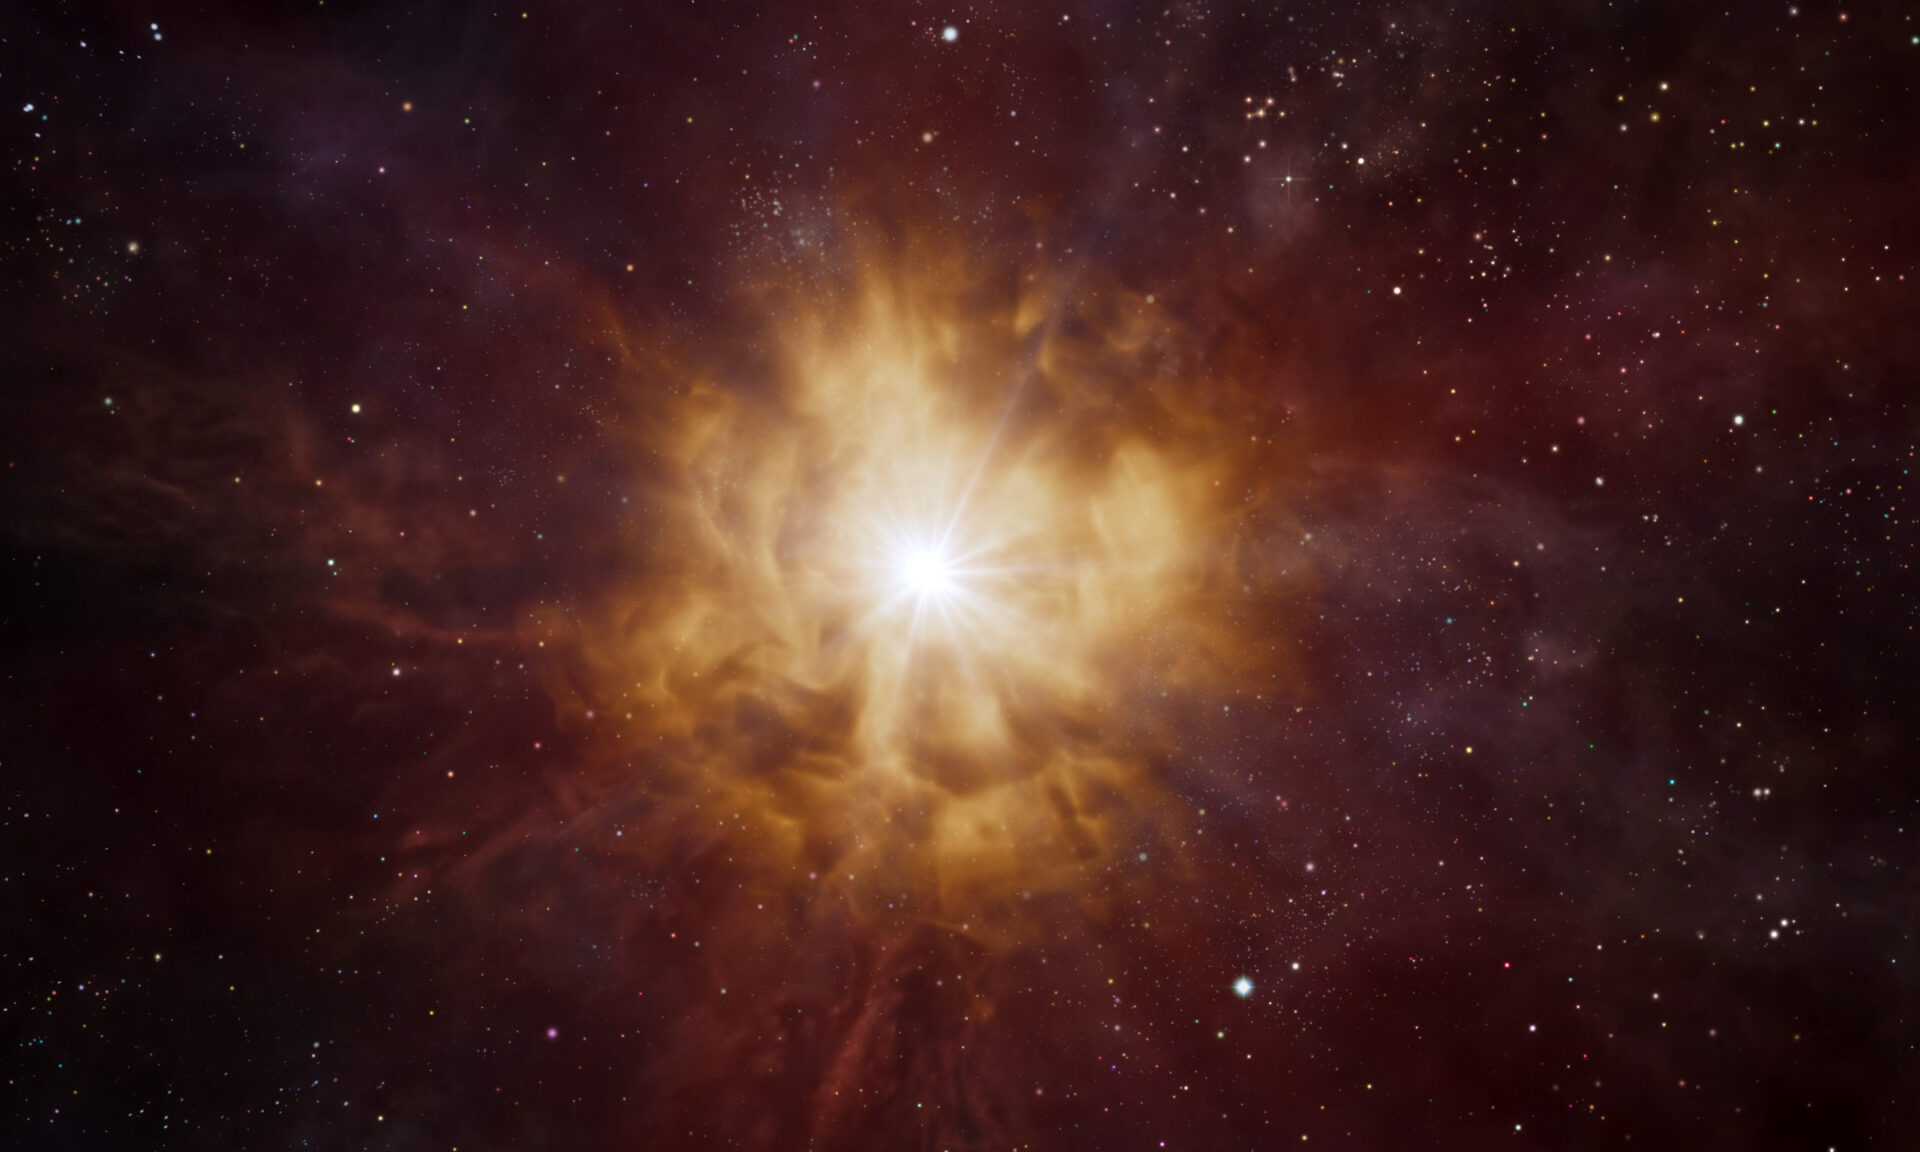 <p>Esta impresión artística muestra el núcleo brillante de una estrella Wolf Rayet, rodeado por una nebulosa de material expulsado por la estrella misma.<br />
Las estrellas Wolf-Rayet son masivas y calientes, con un ciclo de vida de unos pocos millones de años. Se piensa que finalizan en dramáticas explosiones de supernovas, expulsando los elementos que se forjaron en sus núcleos hacia el cosmos.<br />
Crédito: ESO/L. Calçada</p>
